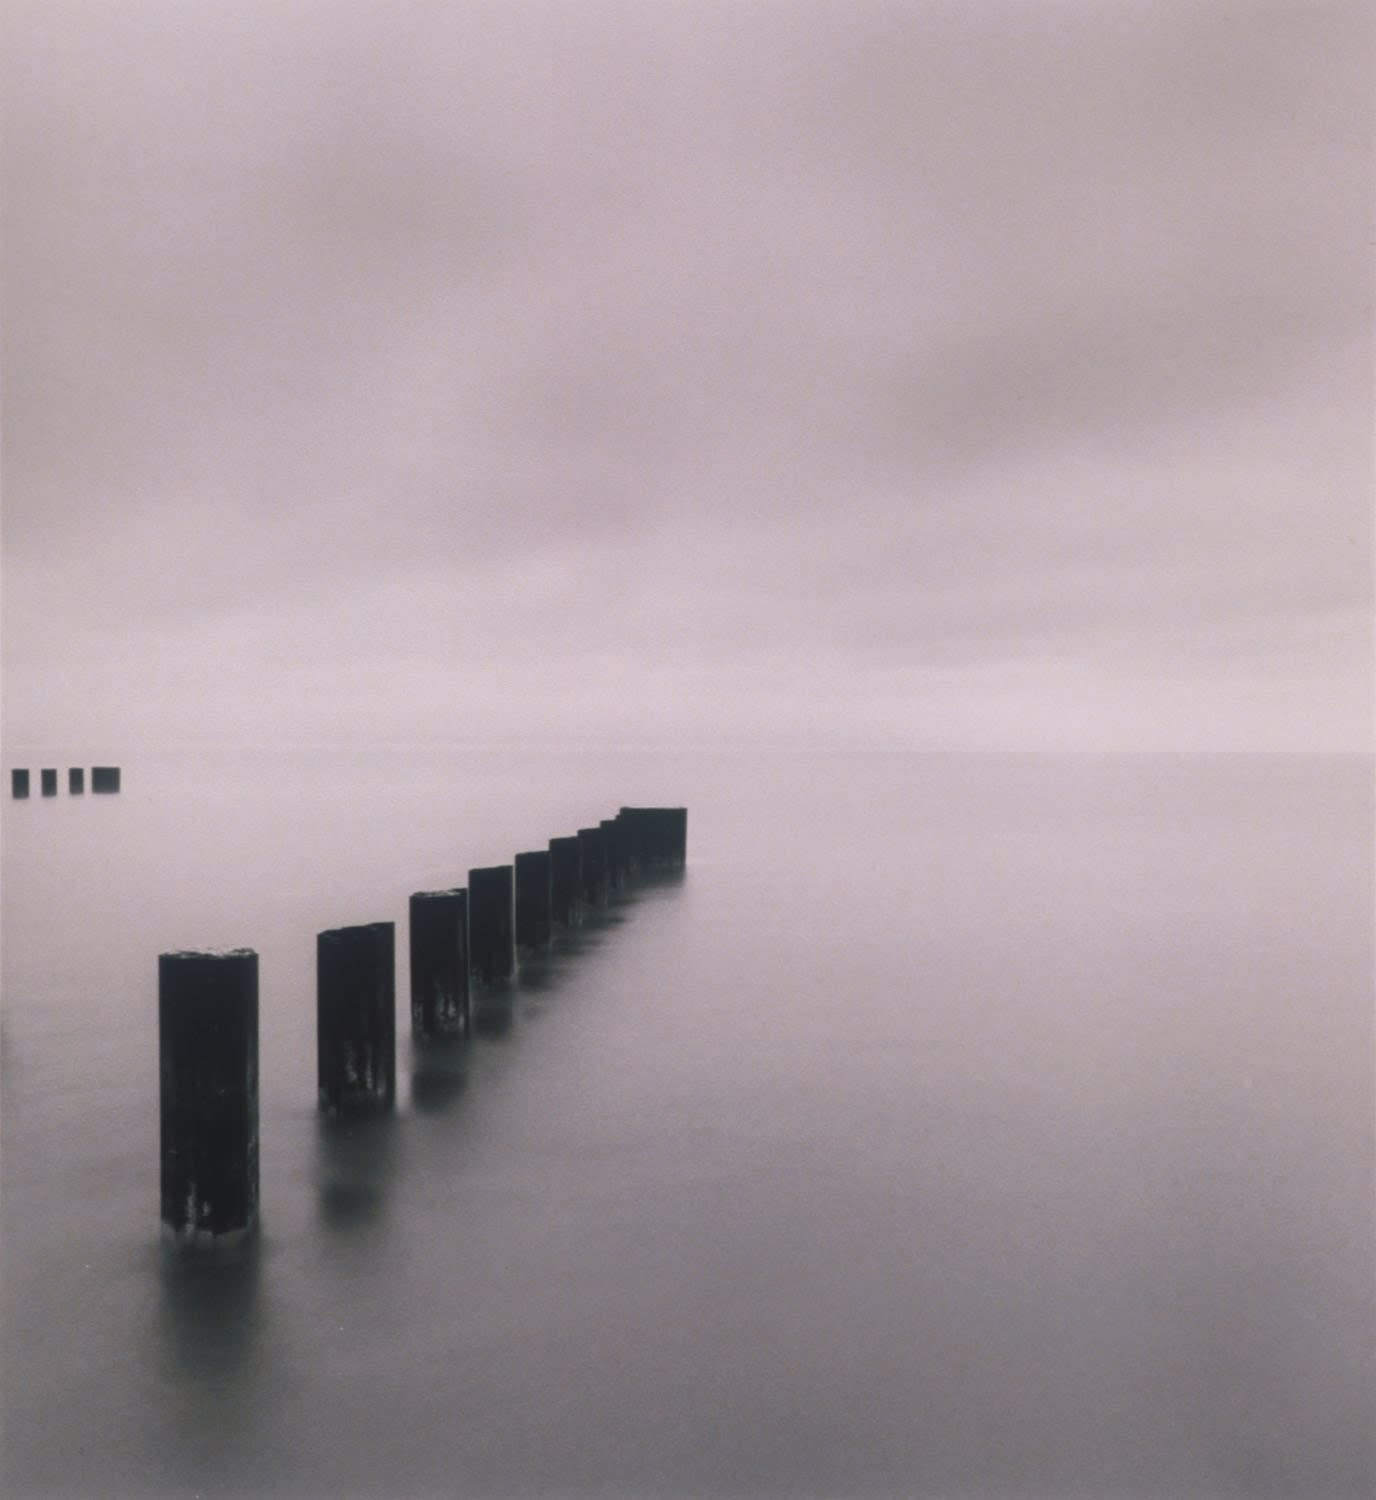 Michael Kenna, Lake Michigan Morning (KE0964), 2001